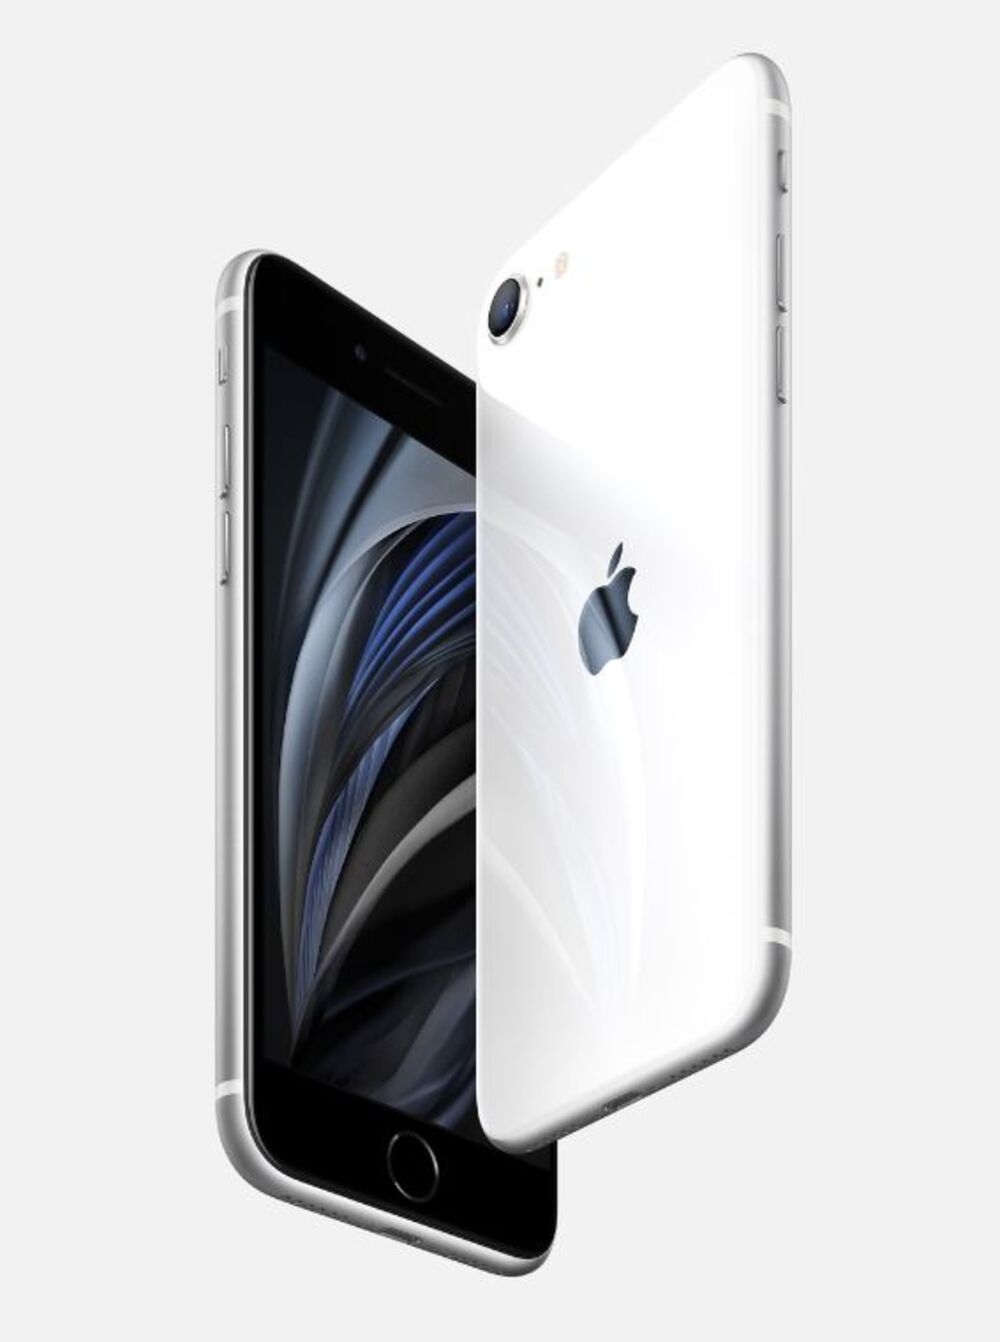 アップル 低価格iphone ｓｅ の新モデル発表 17日に先行予約開始